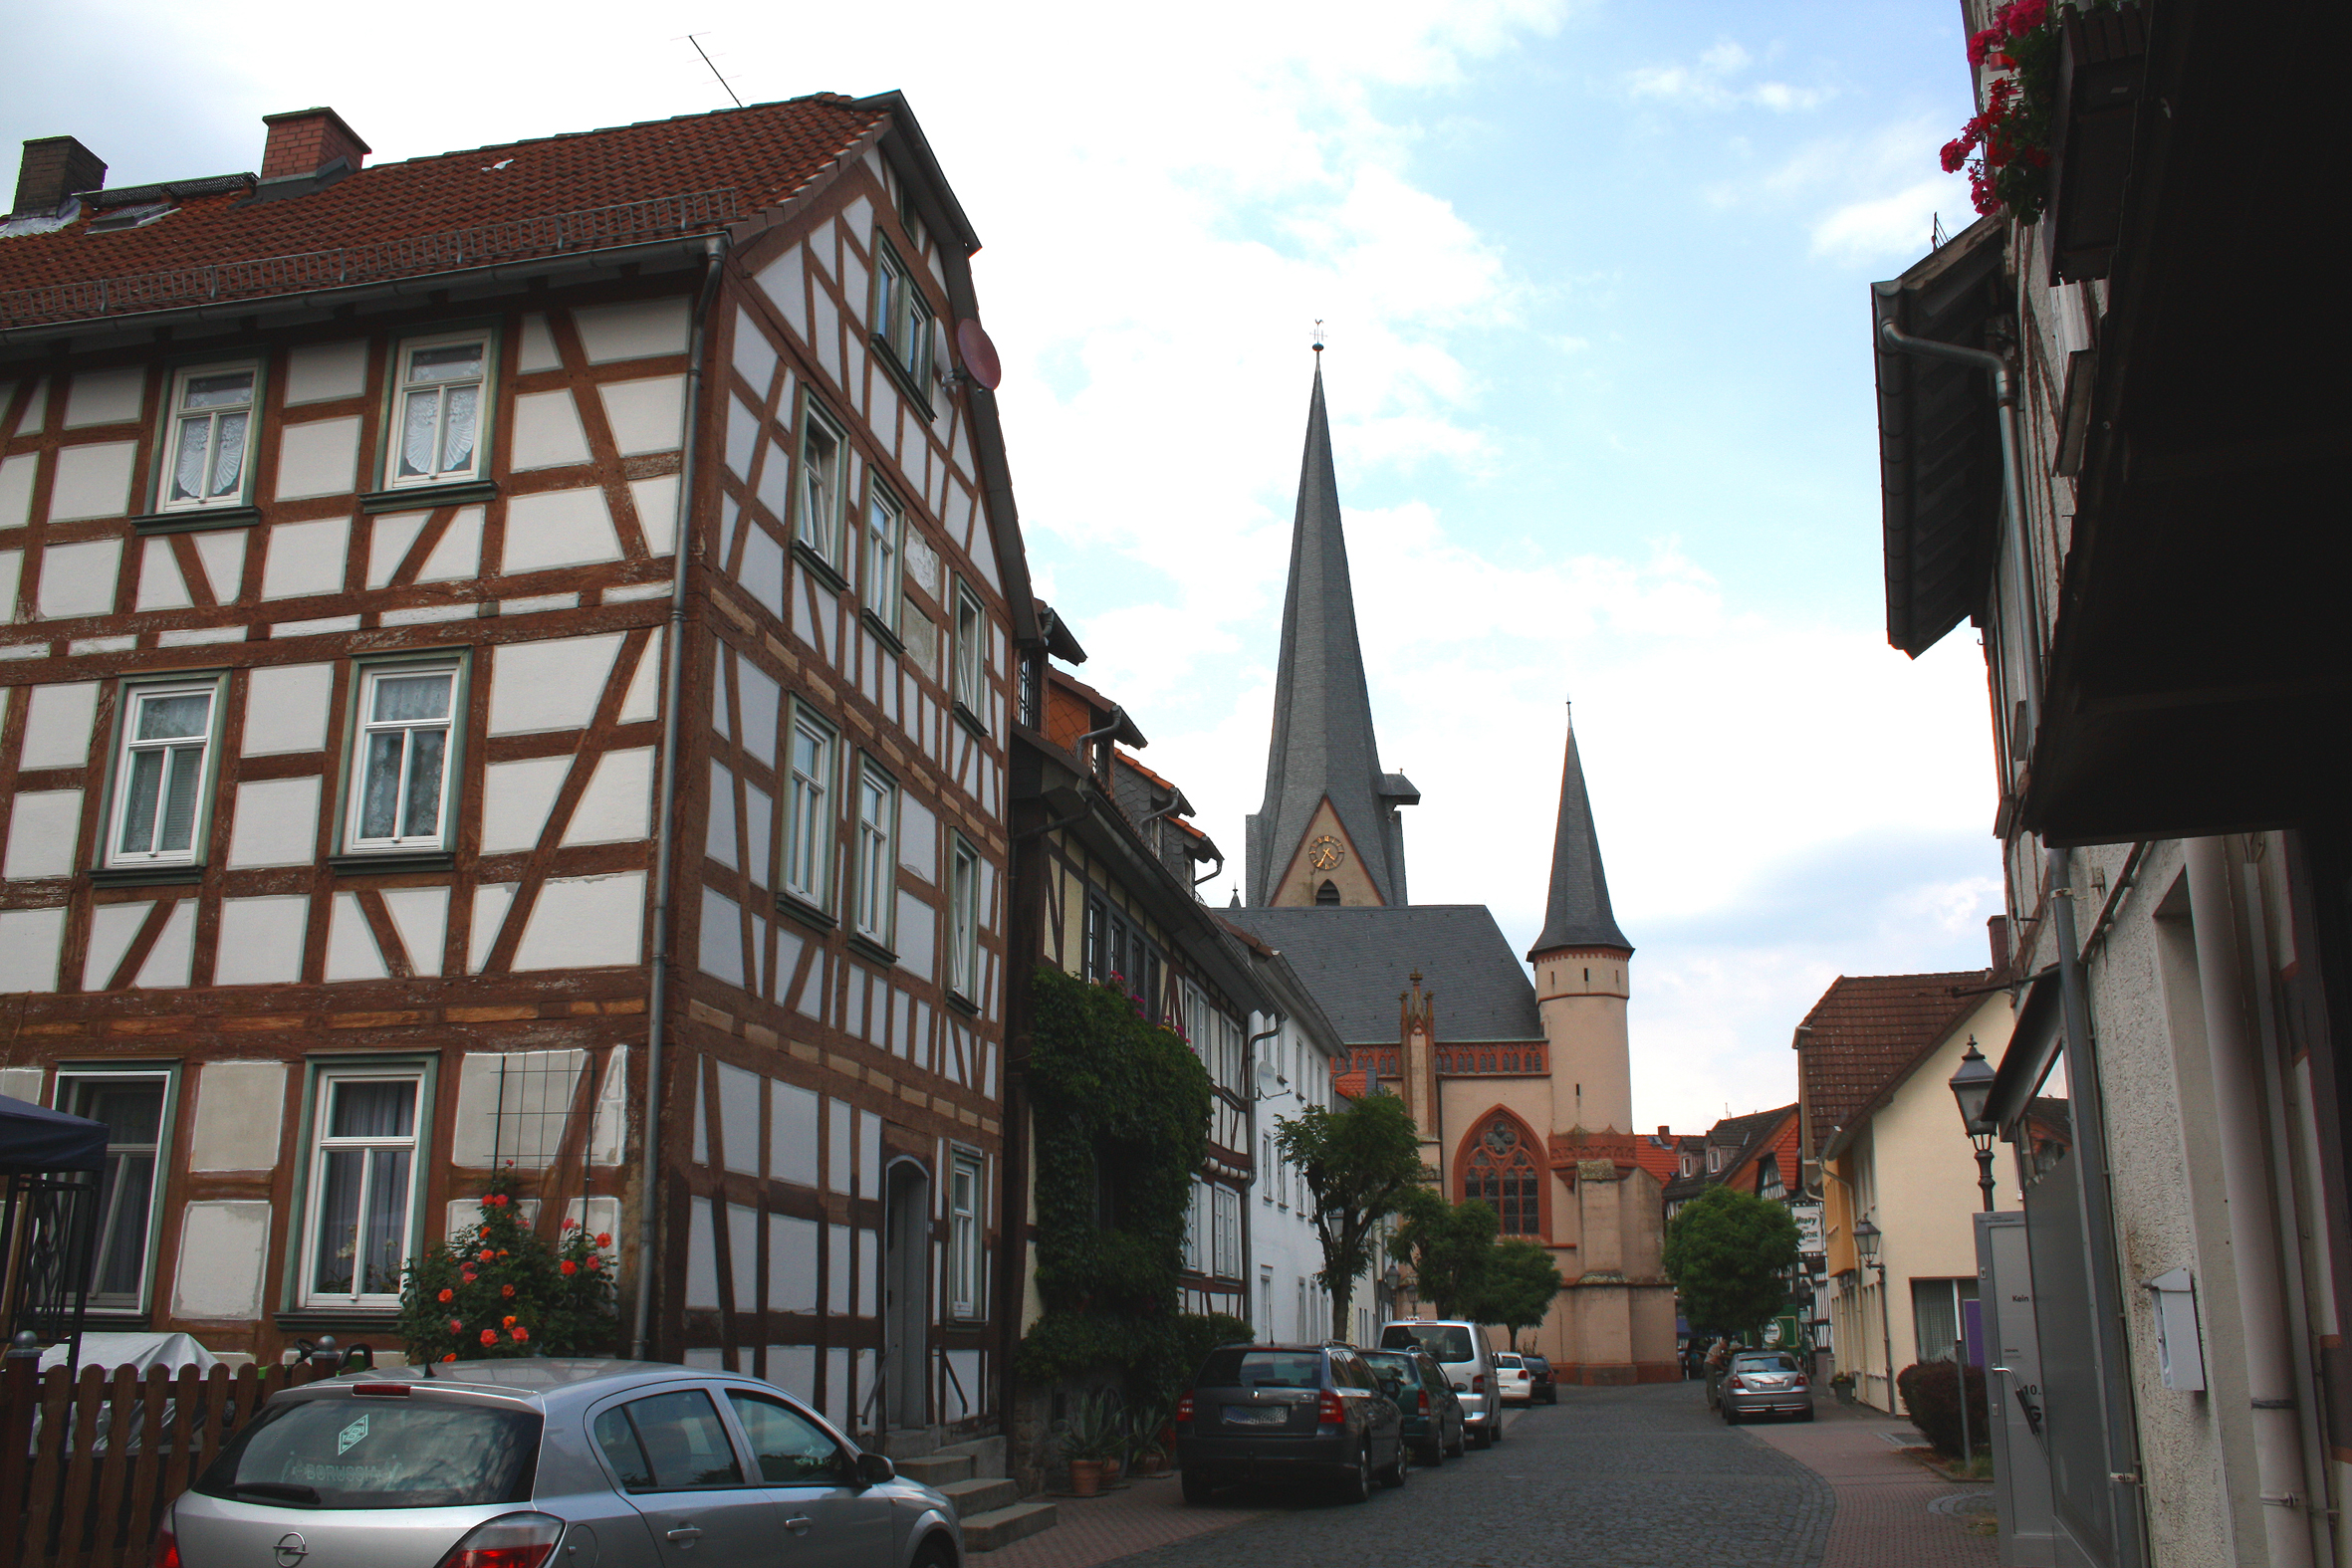 Blick auf die gotische Liebfrauenkirche in Schotten und deren malerischen Altstadt-Gassen.
